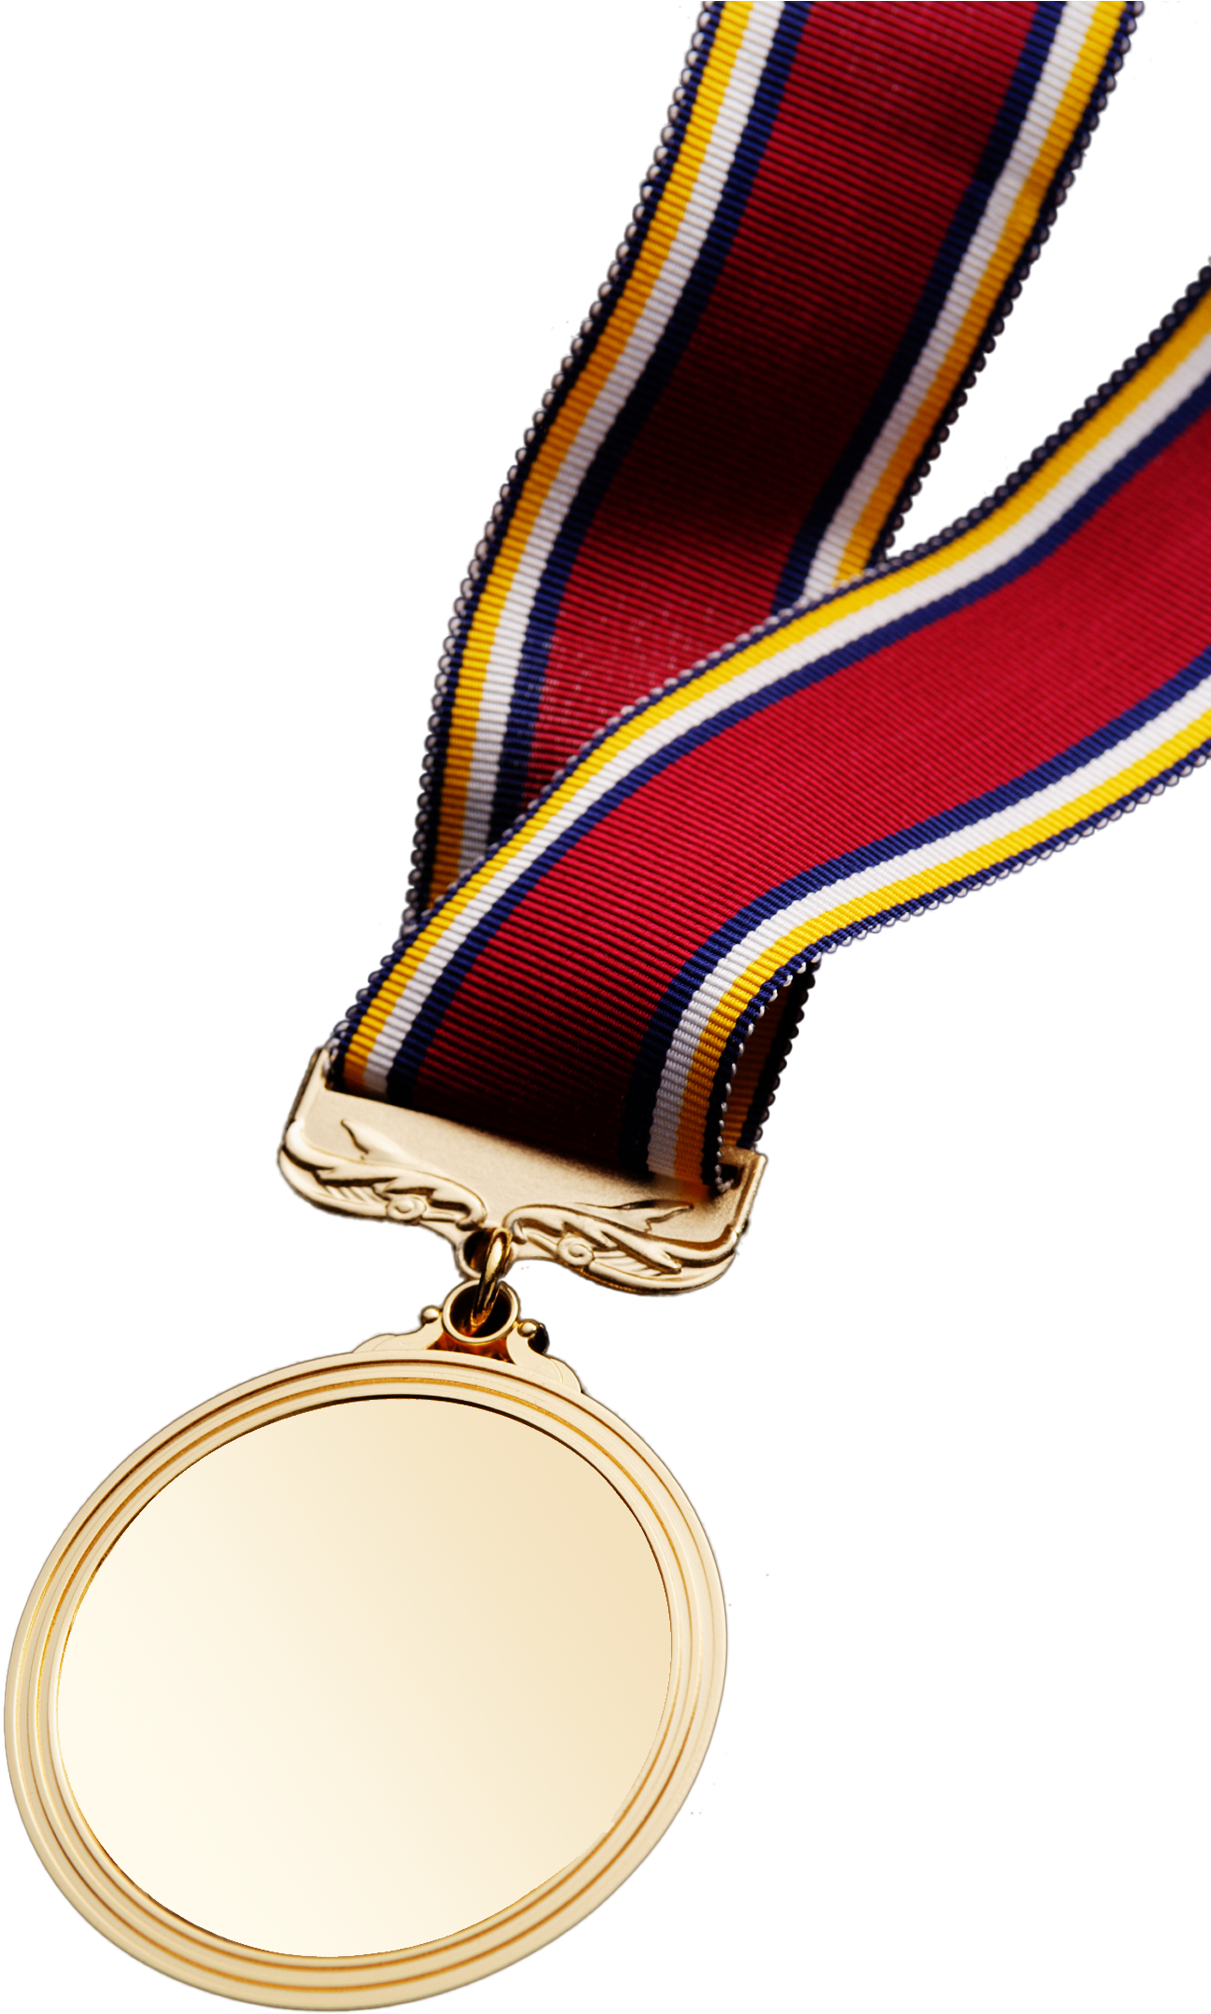 Medal Transparent Background Png - Medal (1620x2205), Png Download